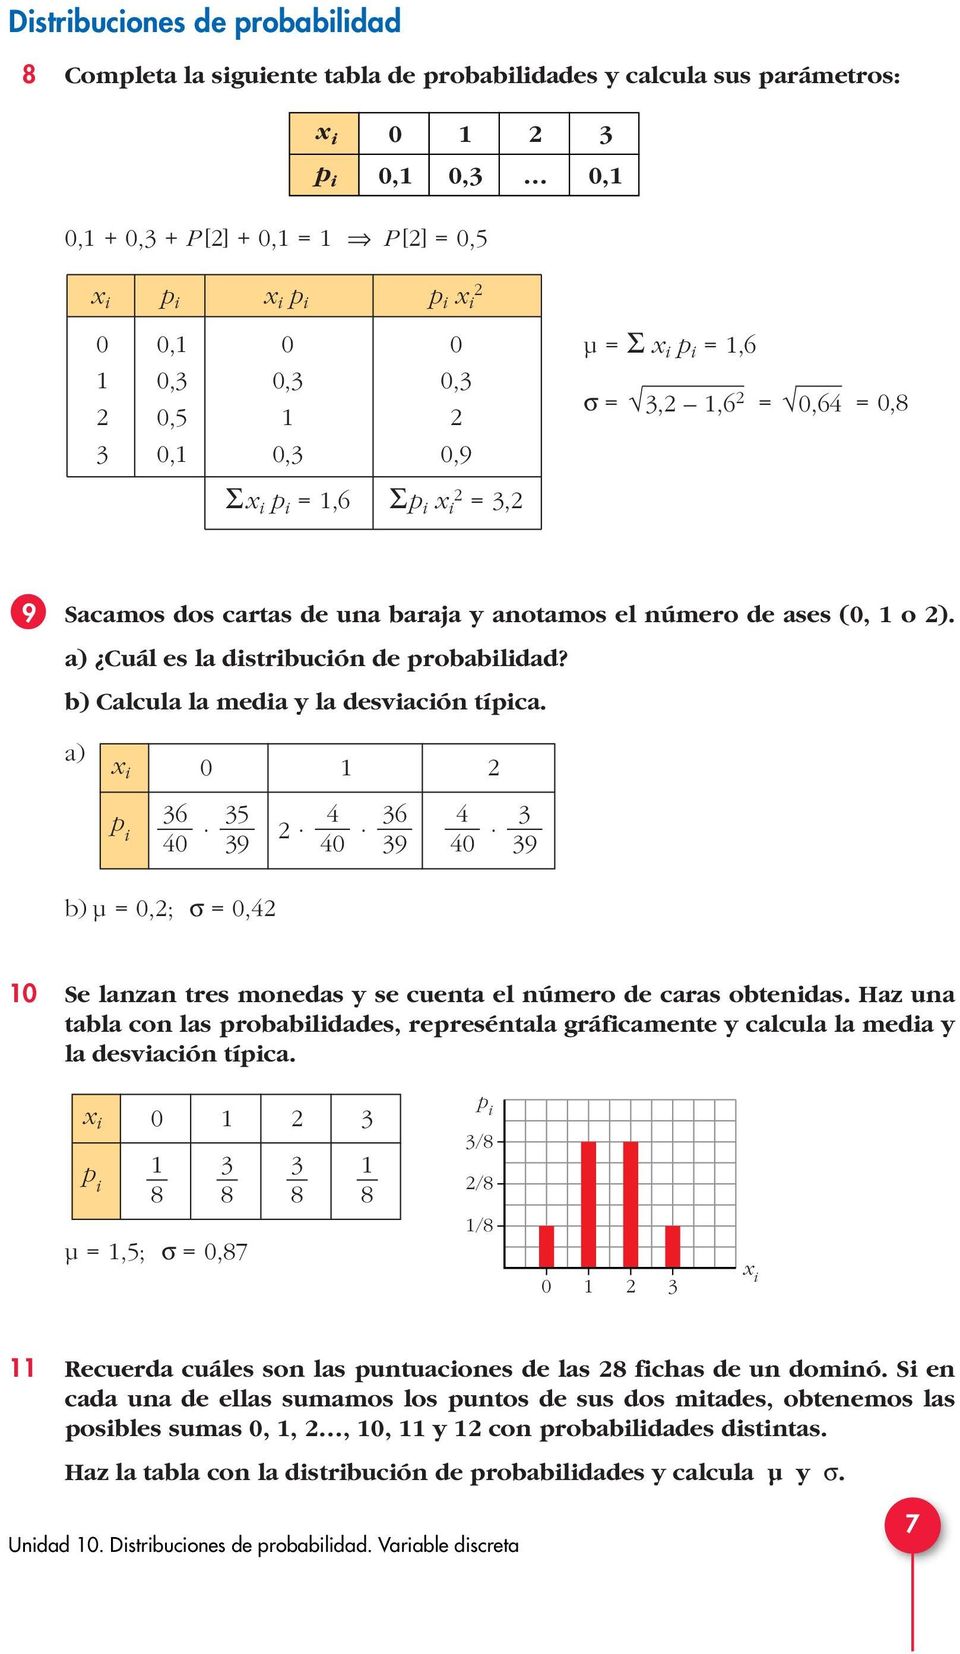 a) uál es la distribución de probabilidad? b) alcula la media y la desviación típica.